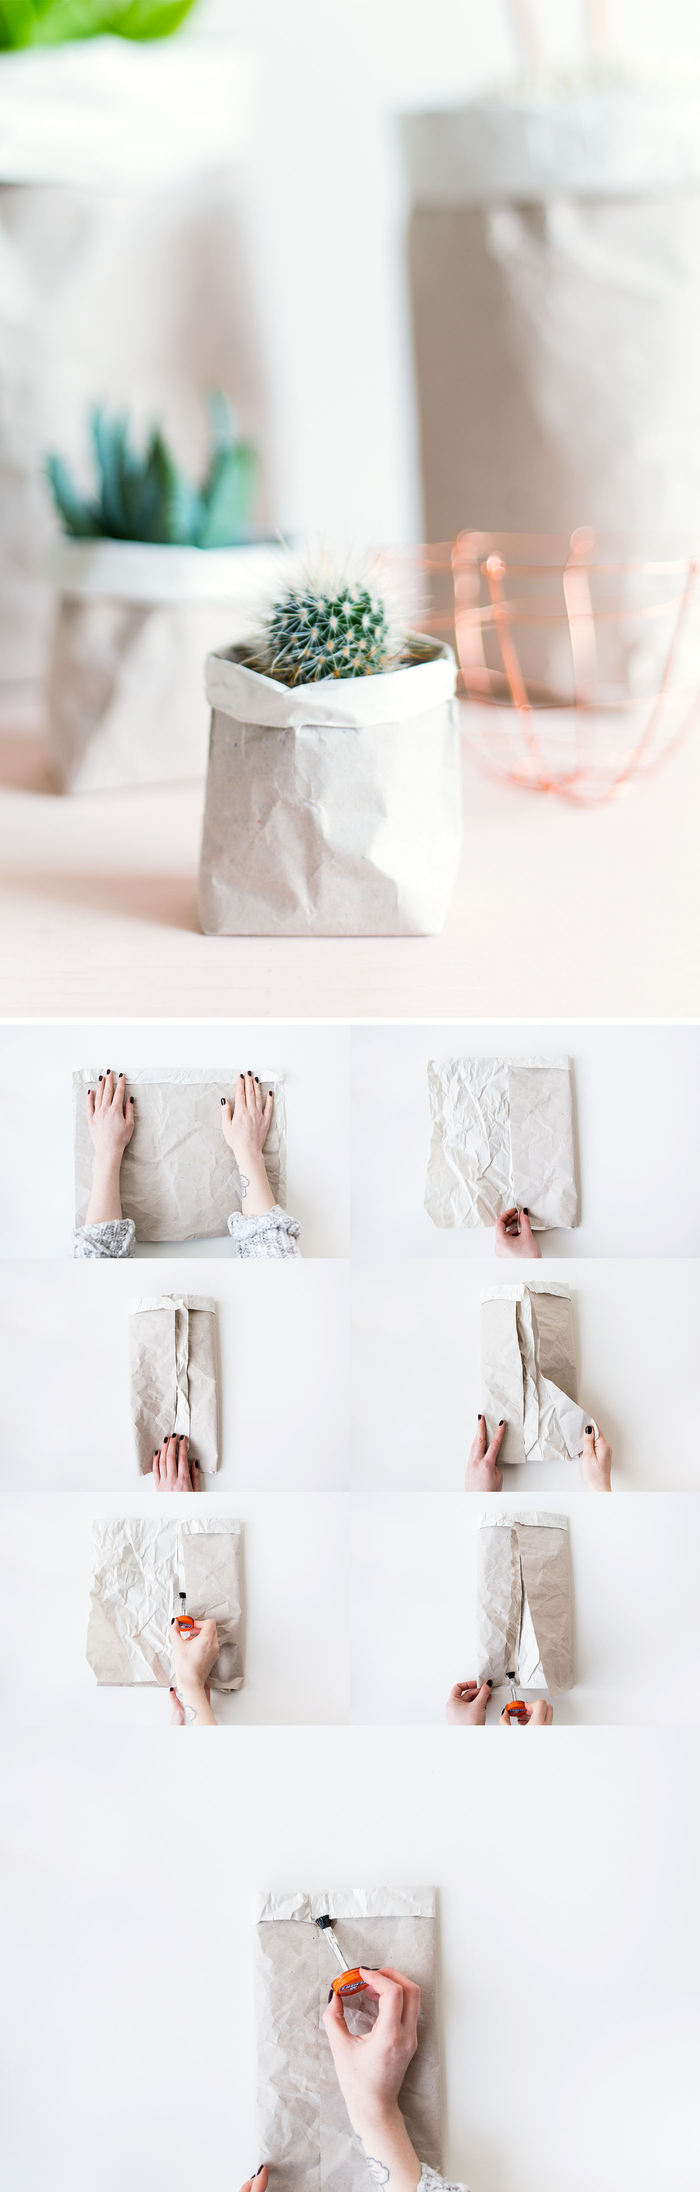 les étapes de pliage facile pour réaliser un cache-pot ou un pot de fleur en papier kraft, activite fete des mères pour réaliser un joli emballage cadeau personnalisé